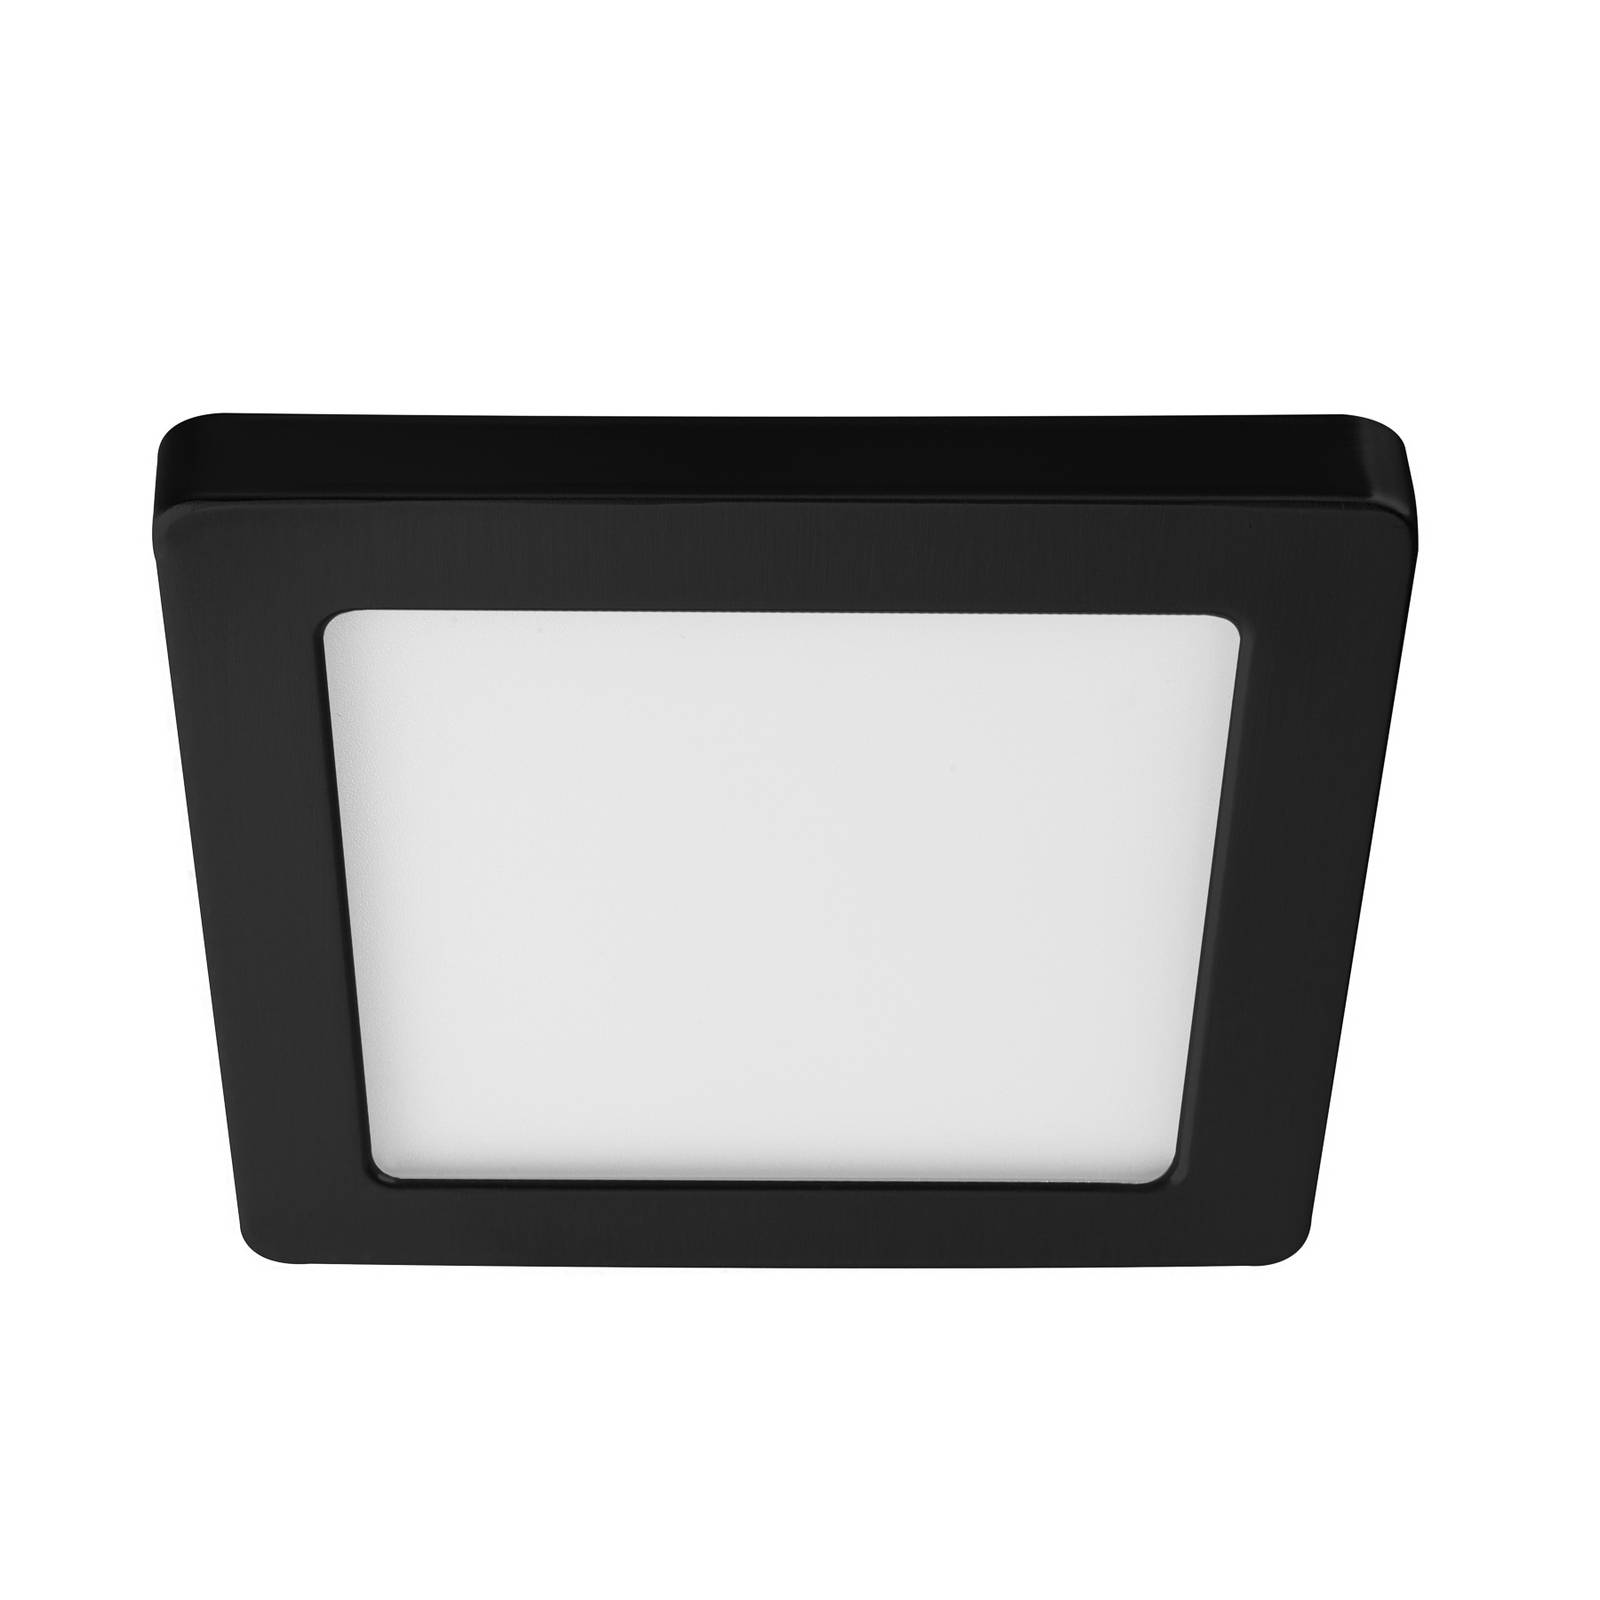 Heitronic Rahmen für LED-Panel Selesto, quadratisch, schwarz